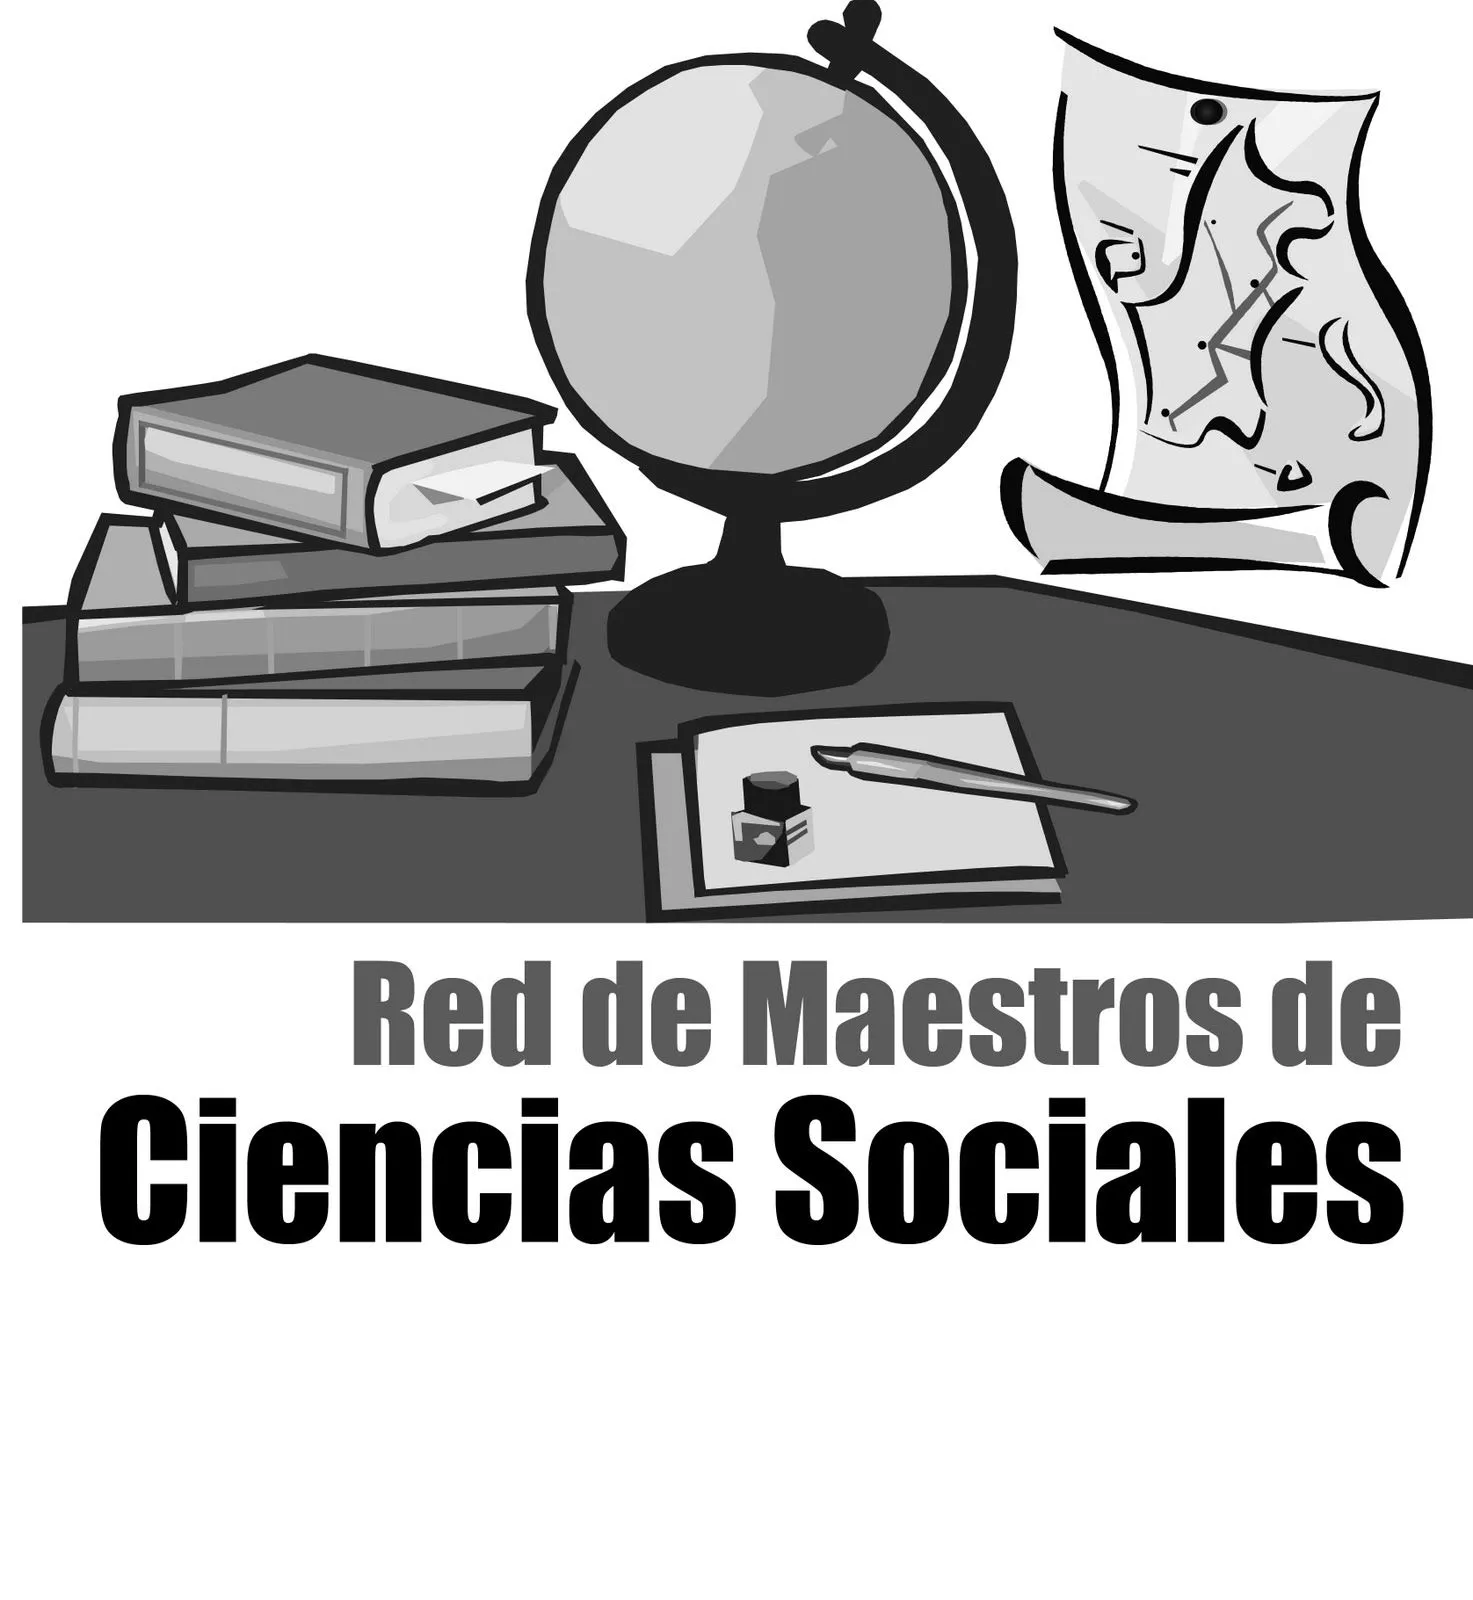 Imagenes para caratulas de ciencias sociales - Imagui